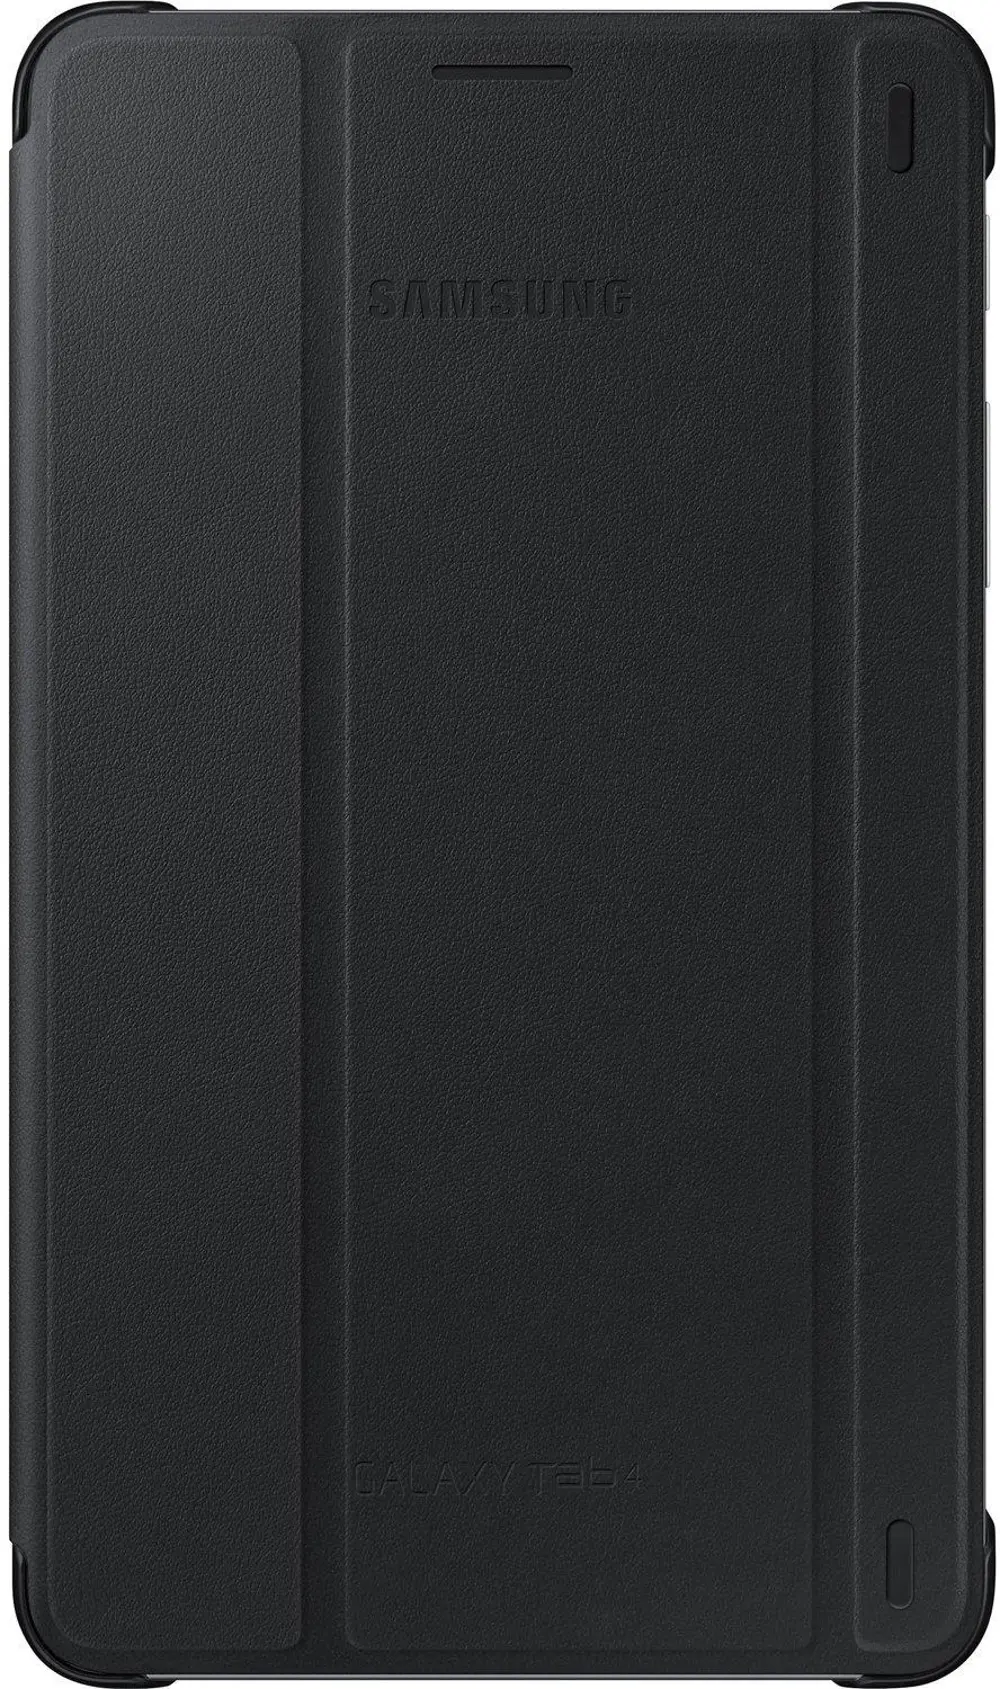 EF-BT230WBEGUJ Samsung Book Cover for Galaxy Tab 4 7.0 - Black-1